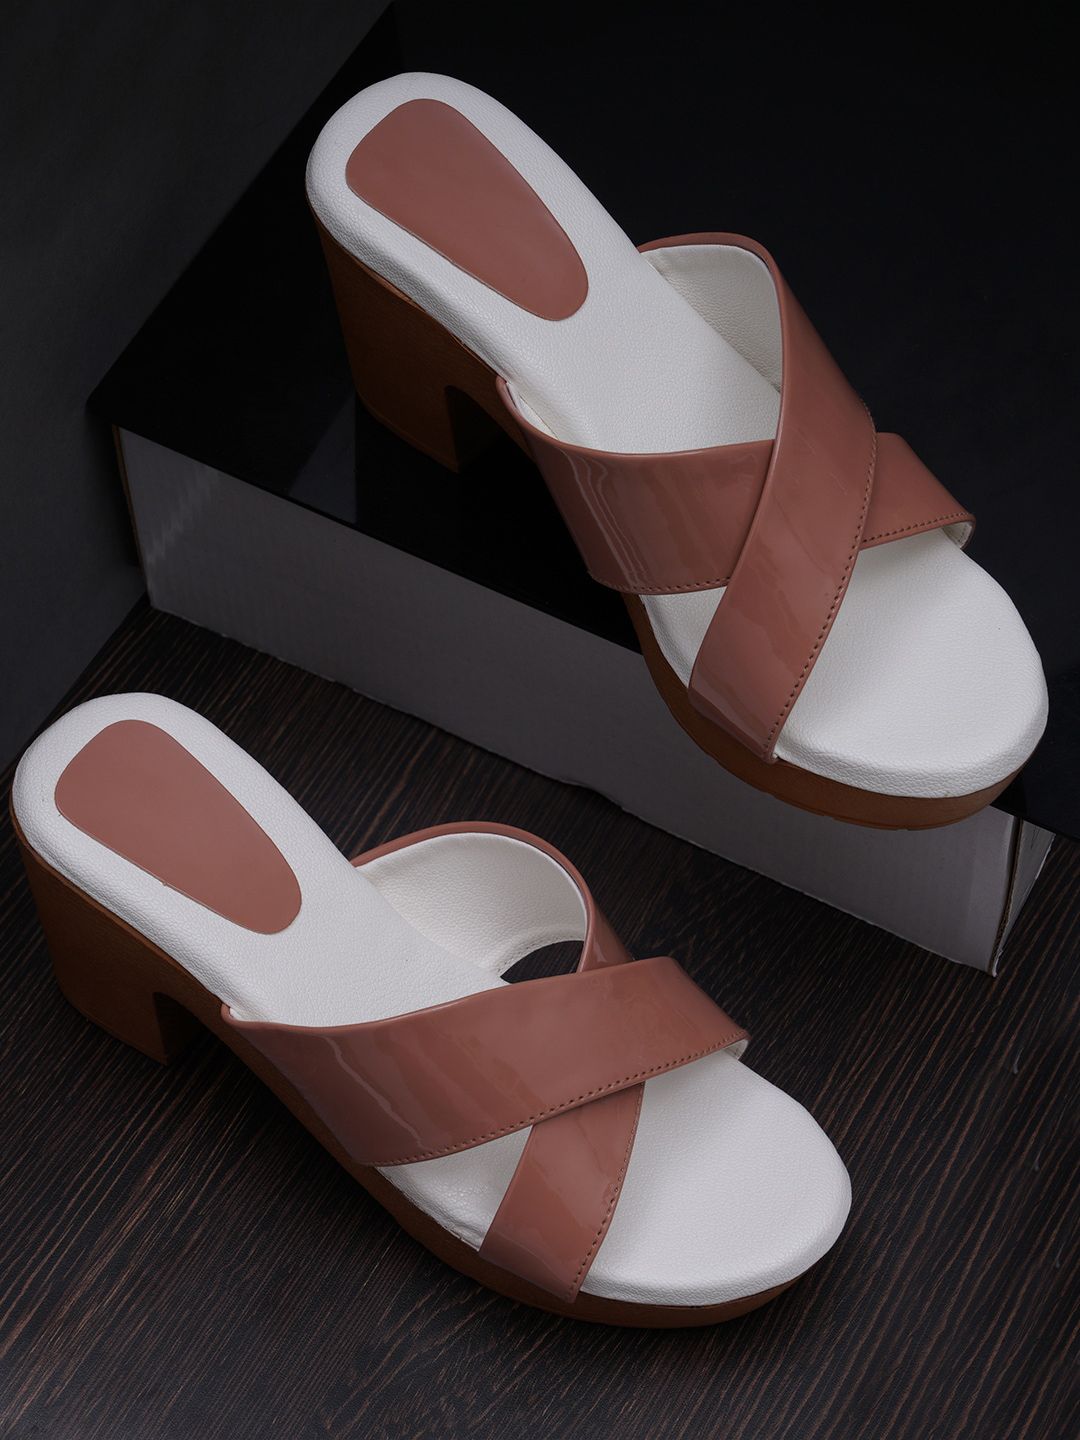 Misto Peach-Coloured Comfort Sandals Price in India